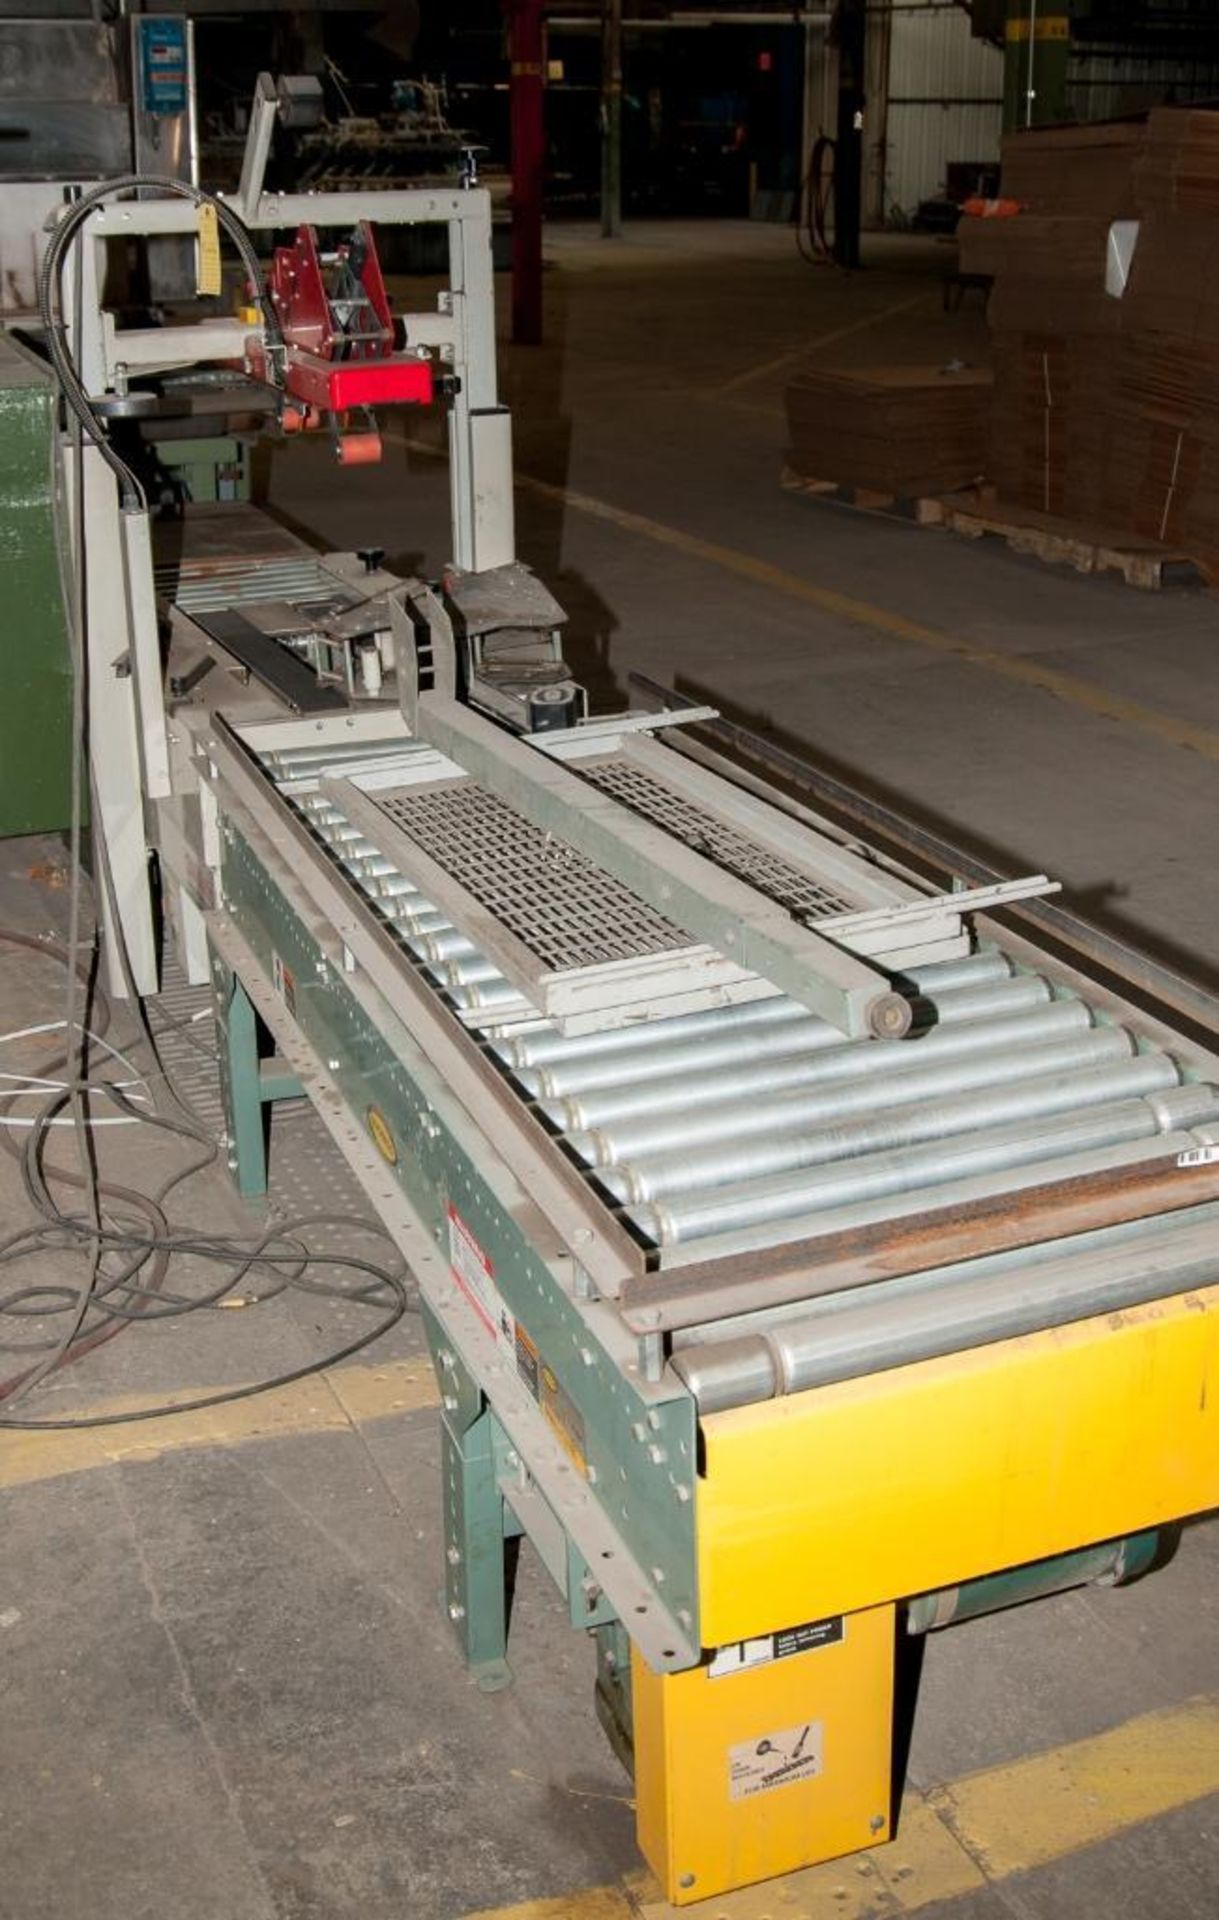 3M 200A Adjustable Case Sealer, 115V, S/N 15220 whit Hytrol Conveyor - Image 5 of 5